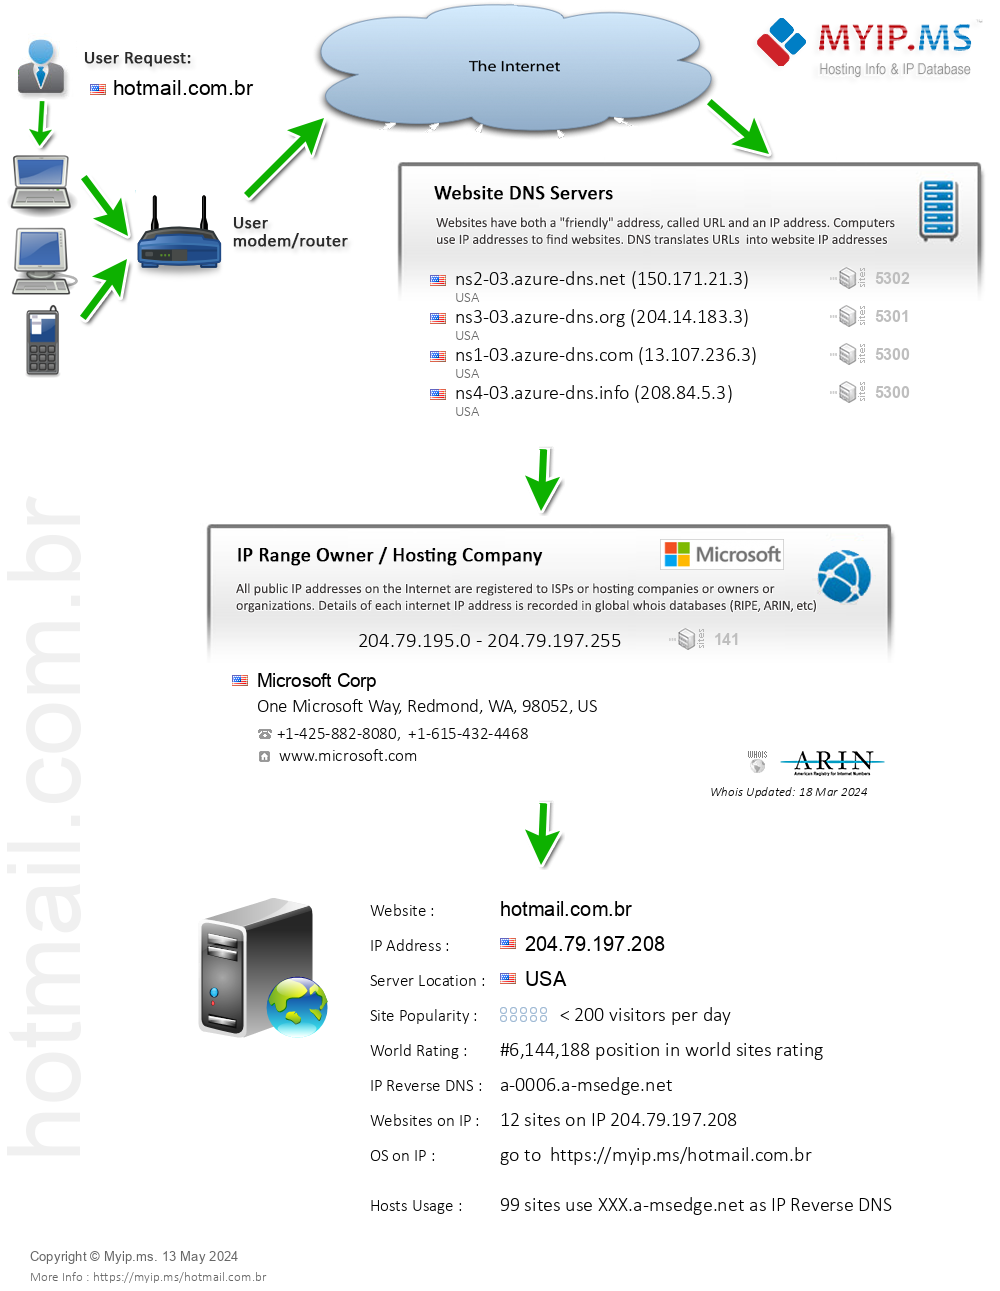 Hotmail.com.br - Website Hosting Visual IP Diagram